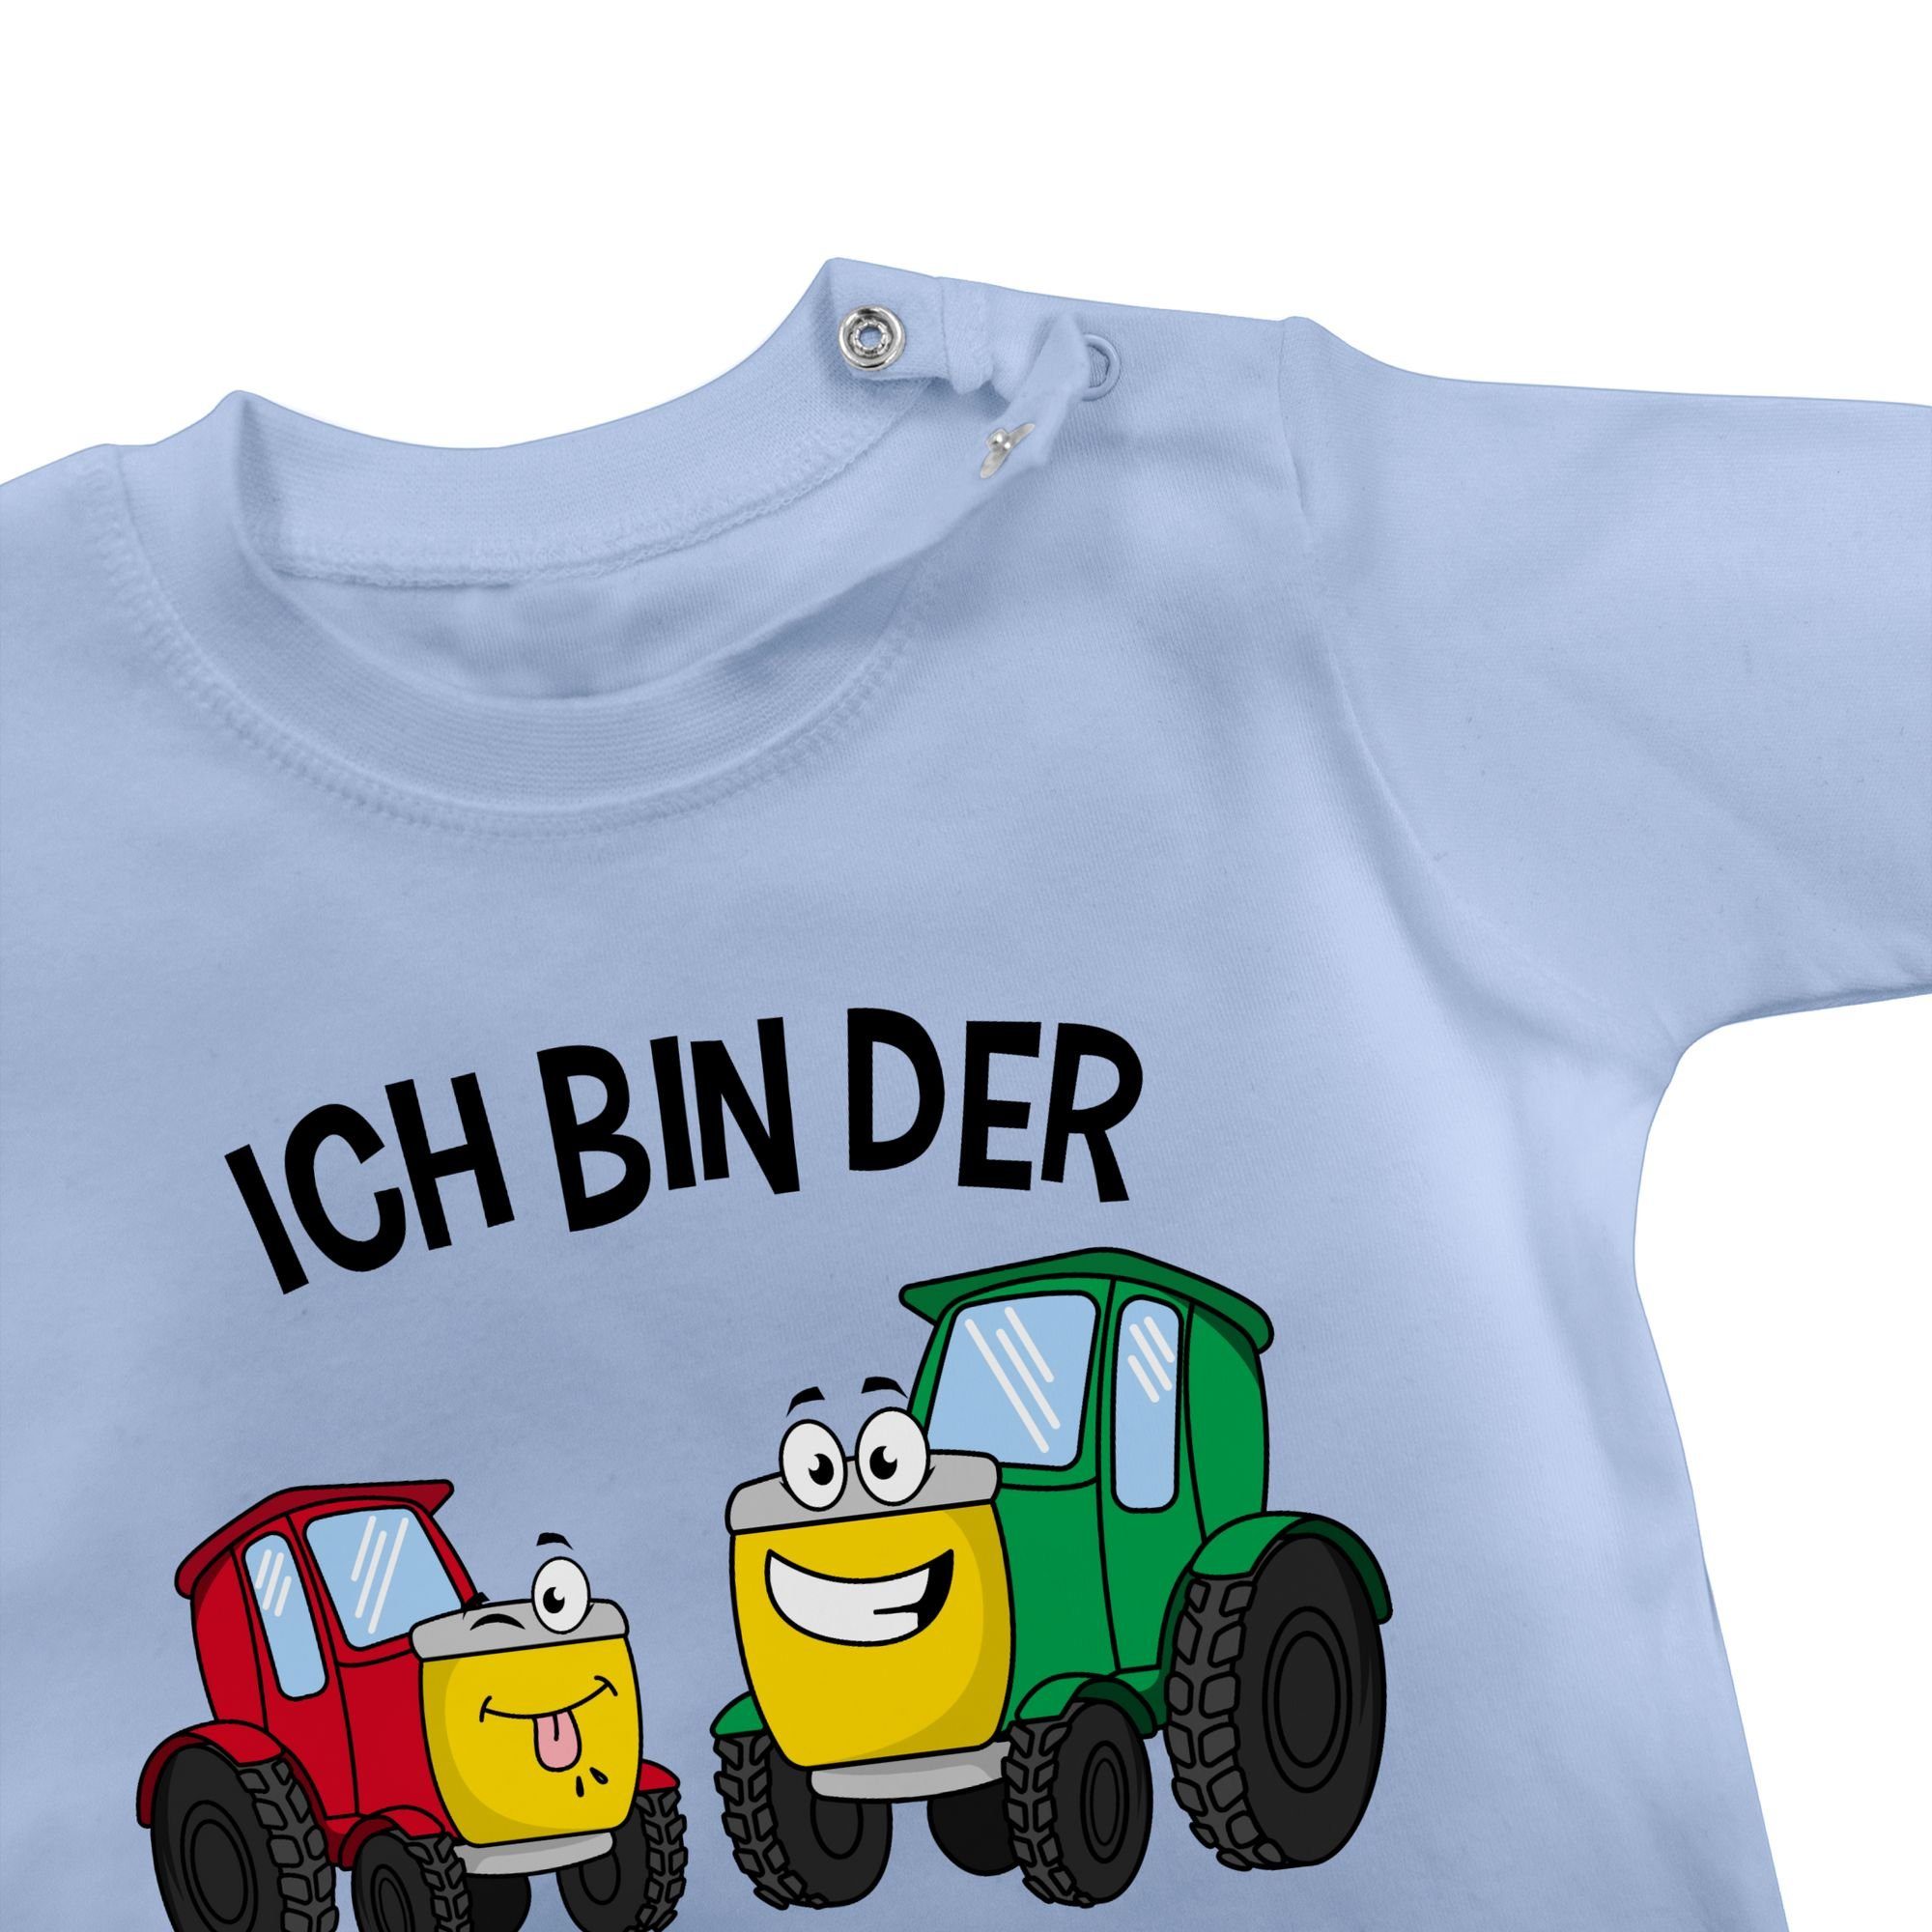 Bruder bin Shirtracer 1 Traktor der Kleiner kleine Bruder Ich T-Shirt Babyblau